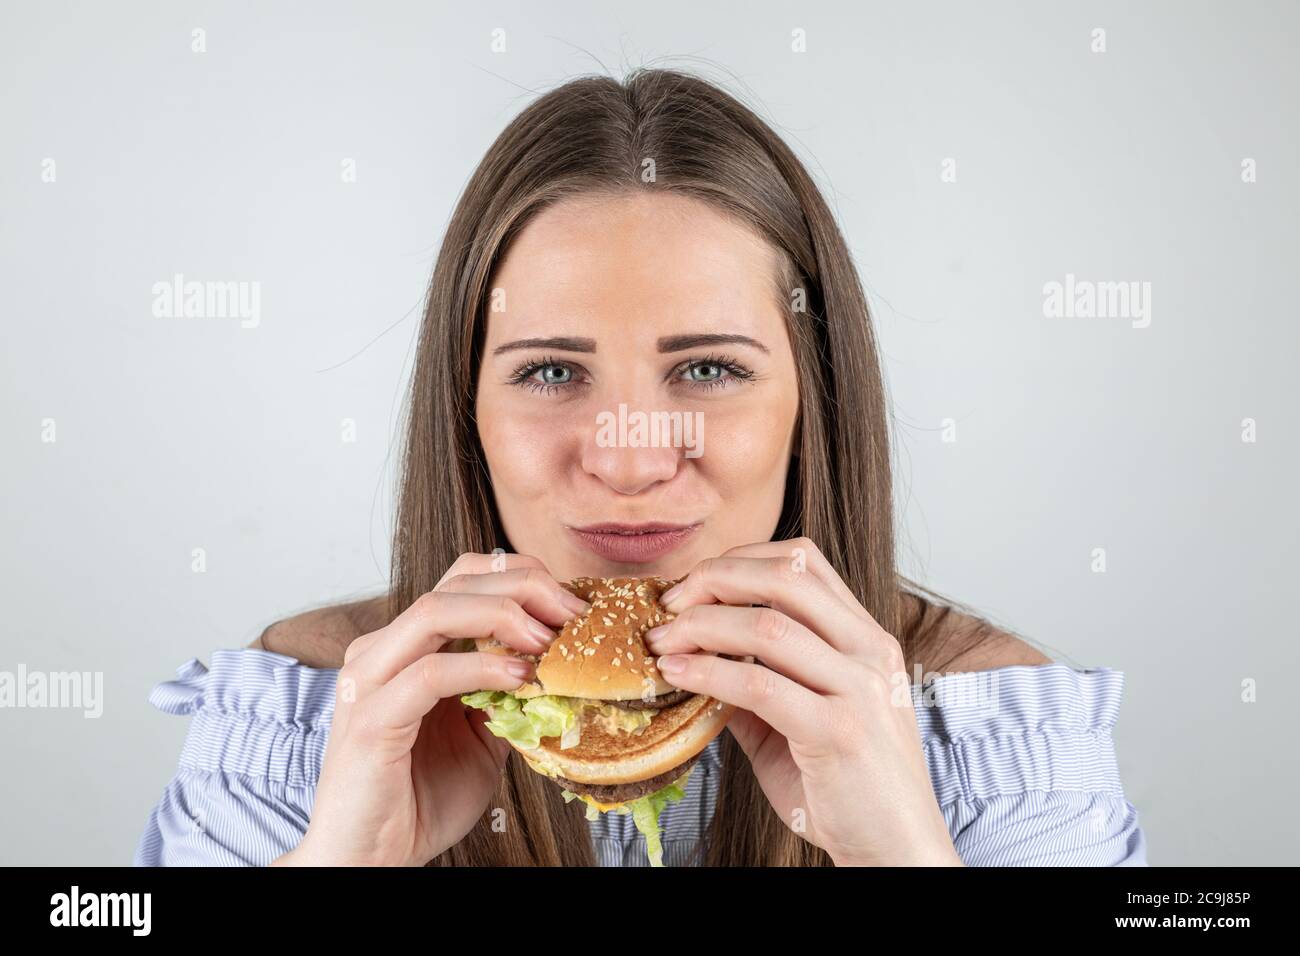 Ritratto di una bella giovane donna che mangia un hamburger, isolato su sfondo bianco Foto Stock